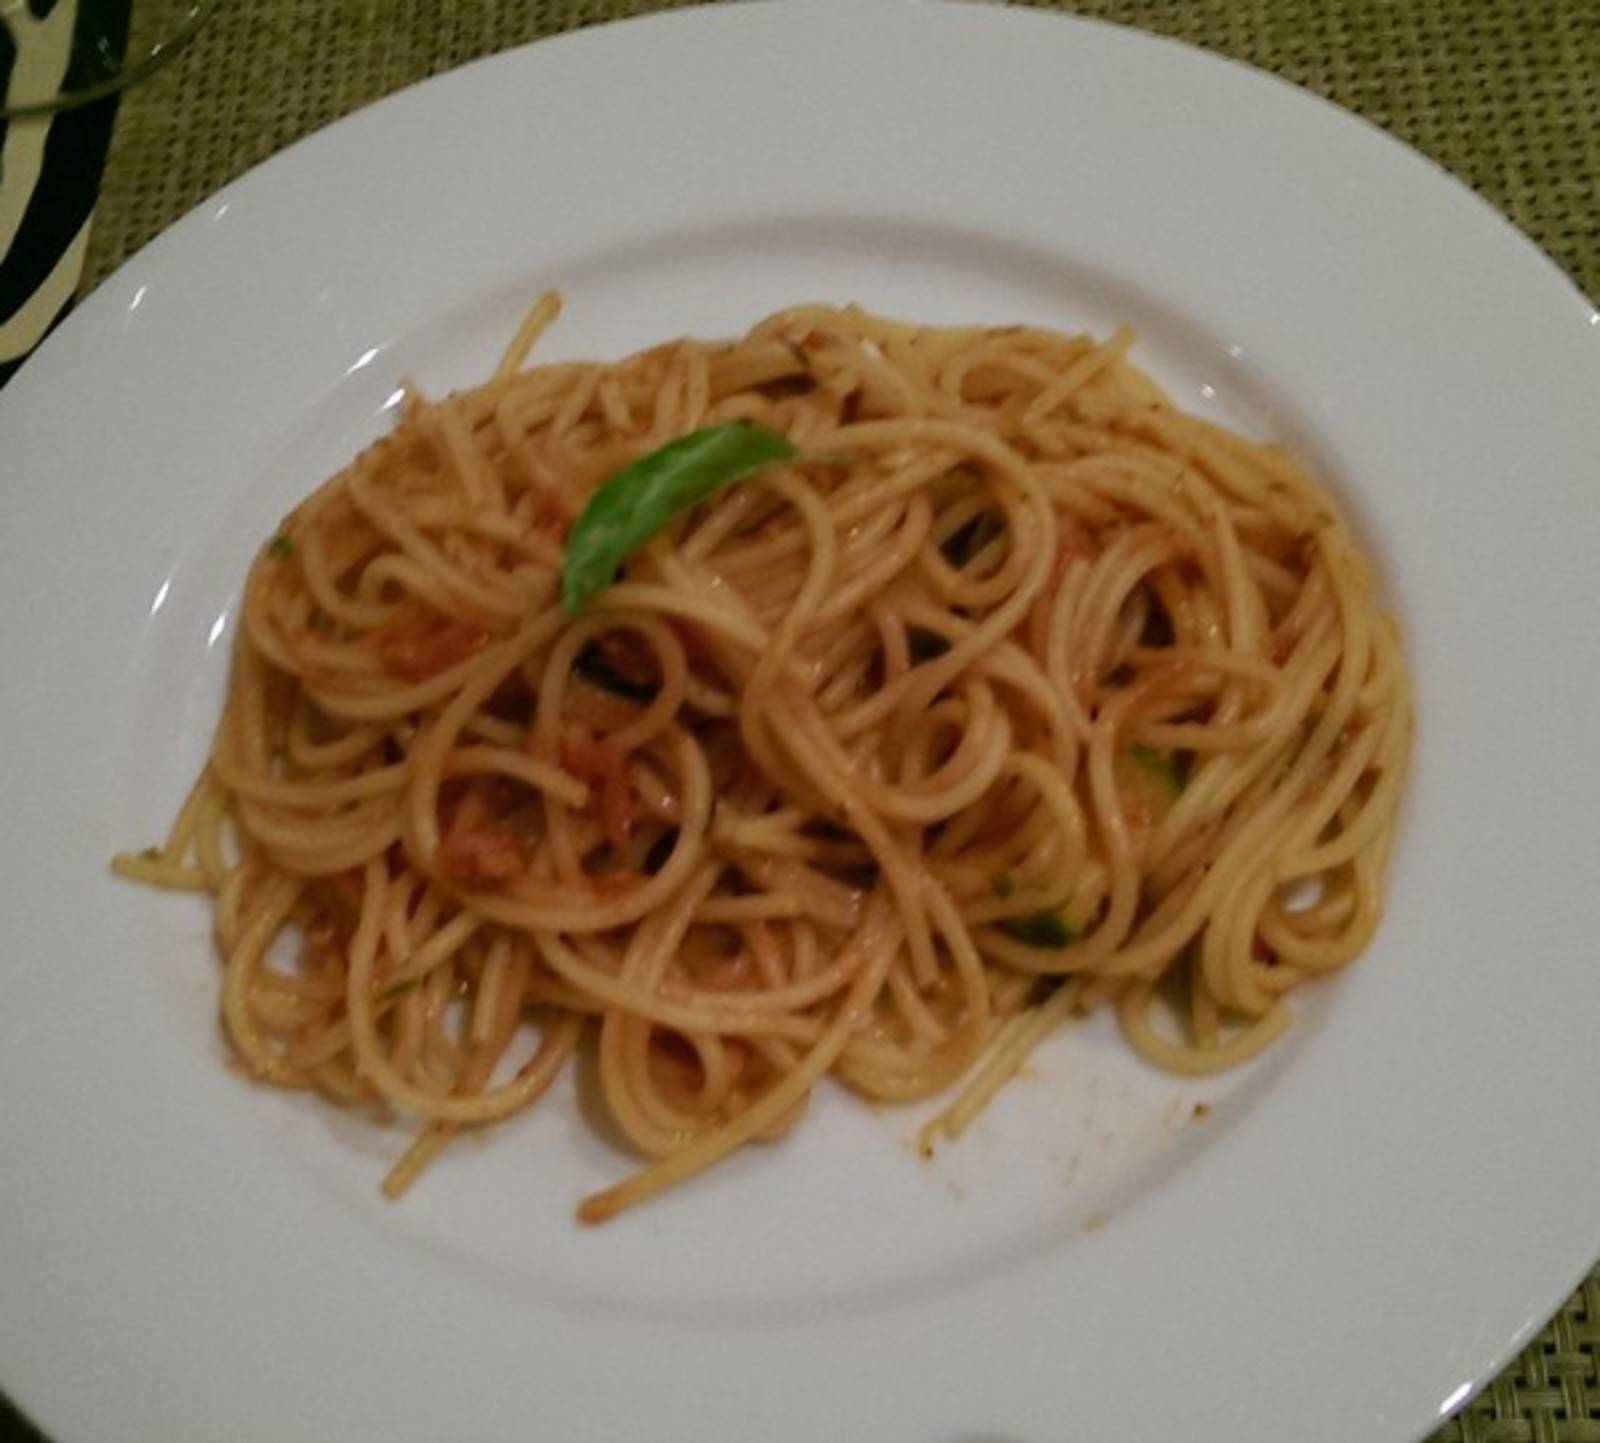 Spaghetti in Zucchini-Tomatensugo